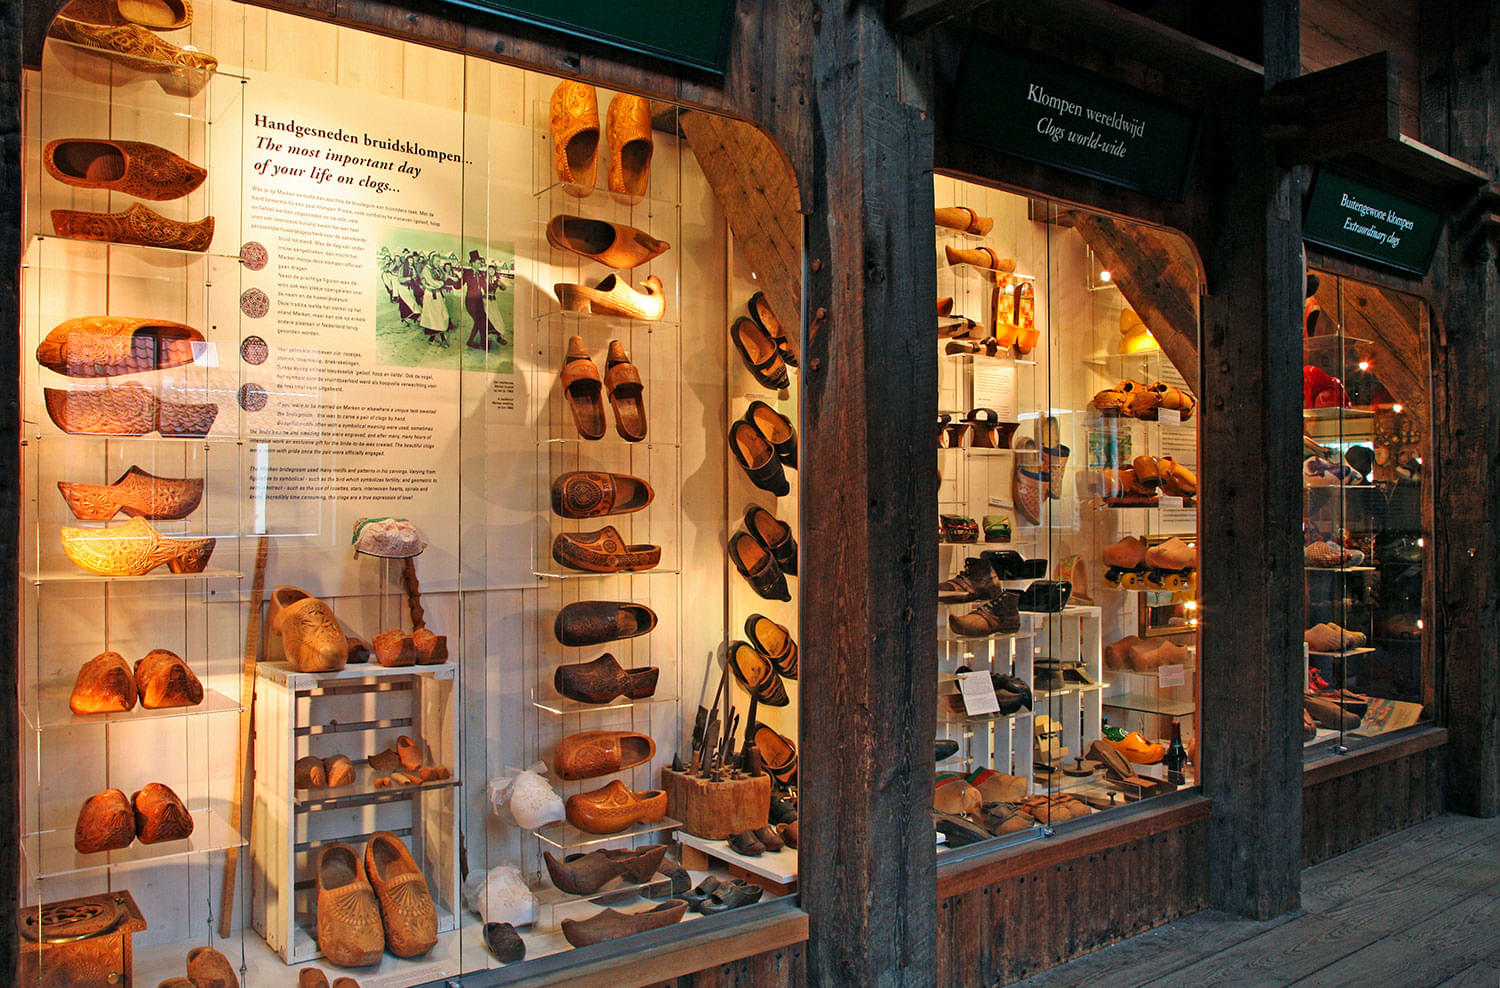 Wooden Shoe Workshop of Zaanse Schans Overview